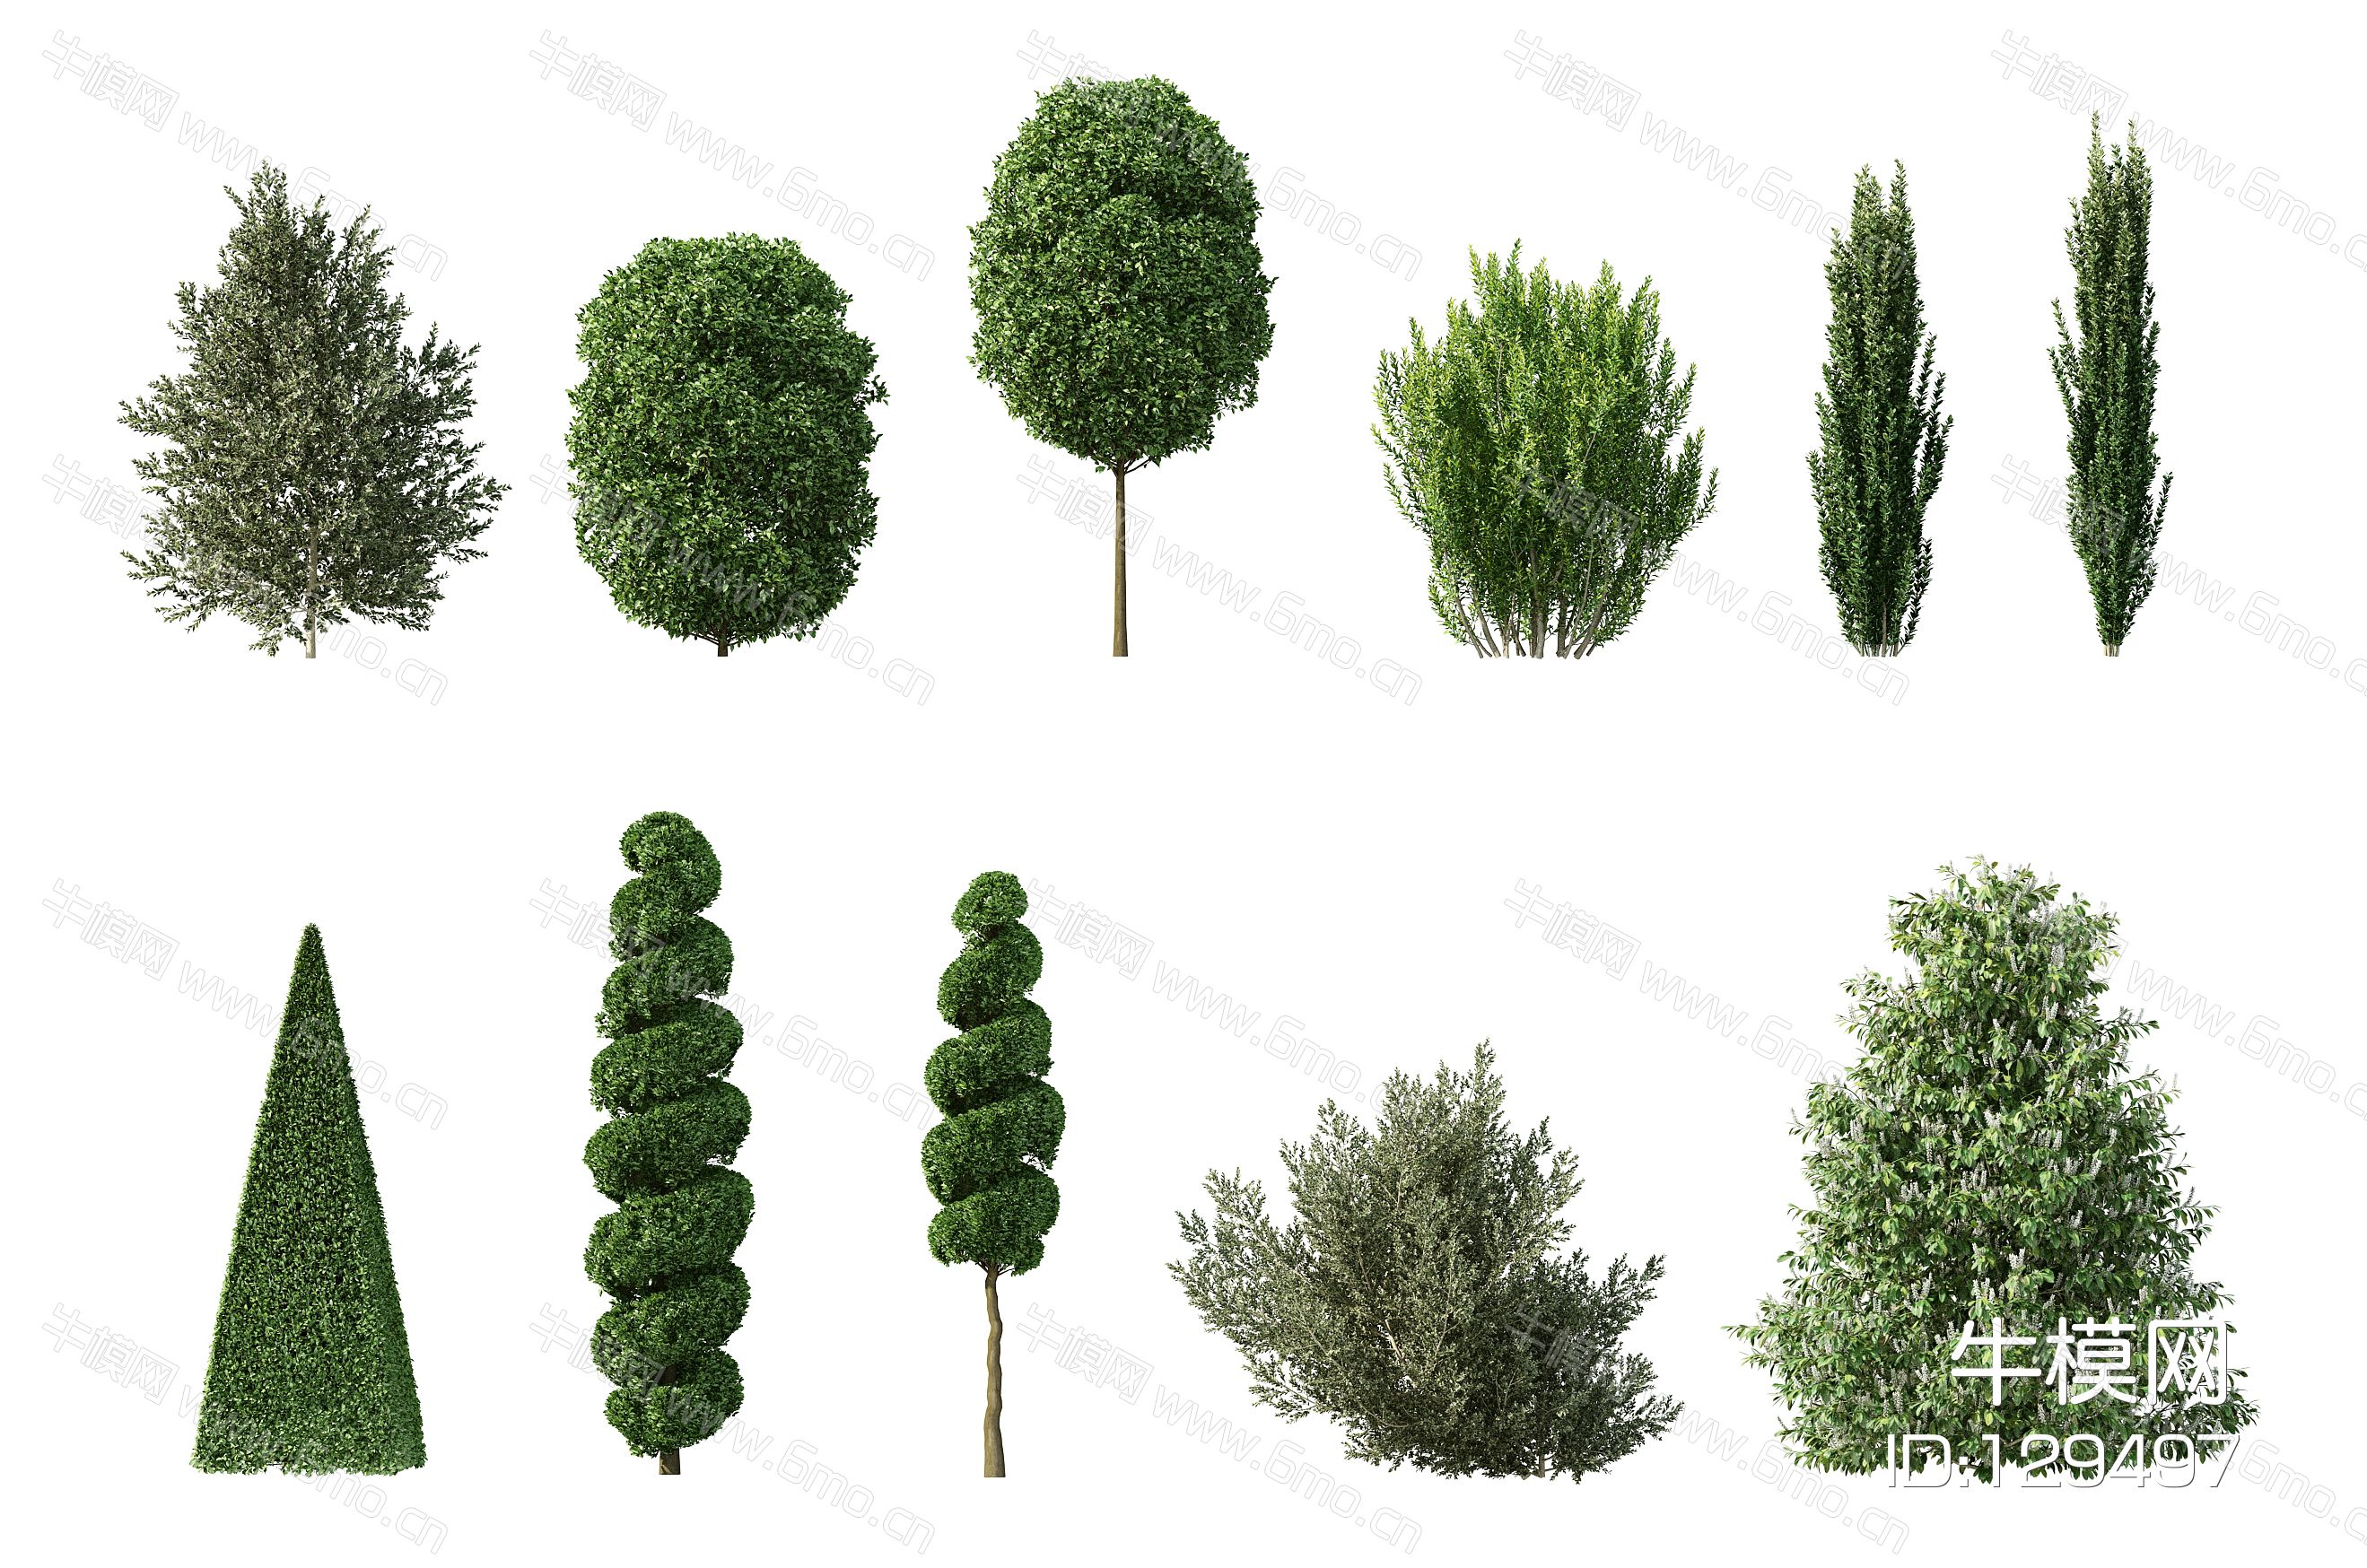 现代灌木，人工灌木，园林植物，园林灌木，人工修剪灌木，人工修剪植物，园林景观植物